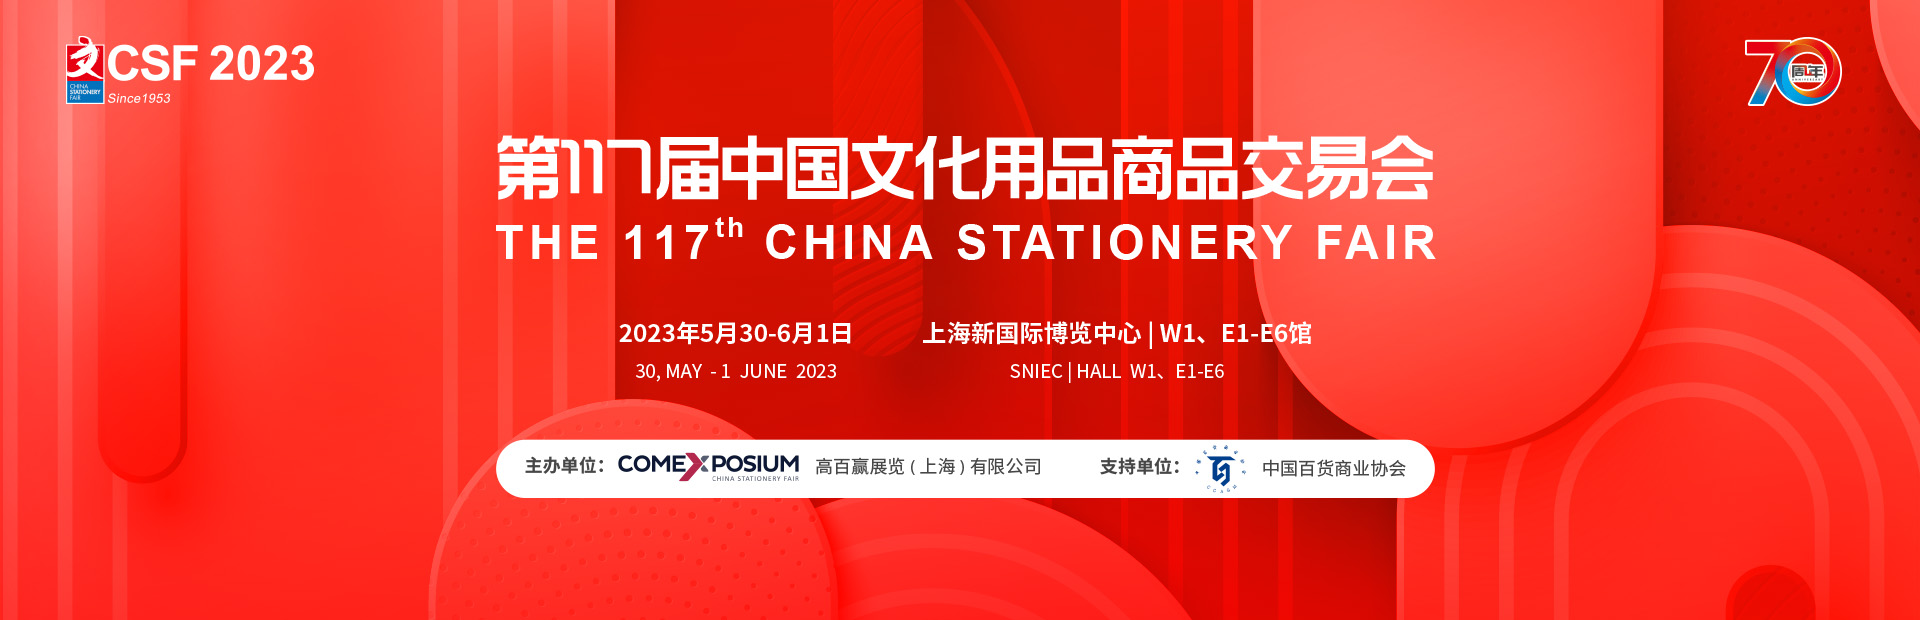 CSF2023第117届中国文化用品商品交易会